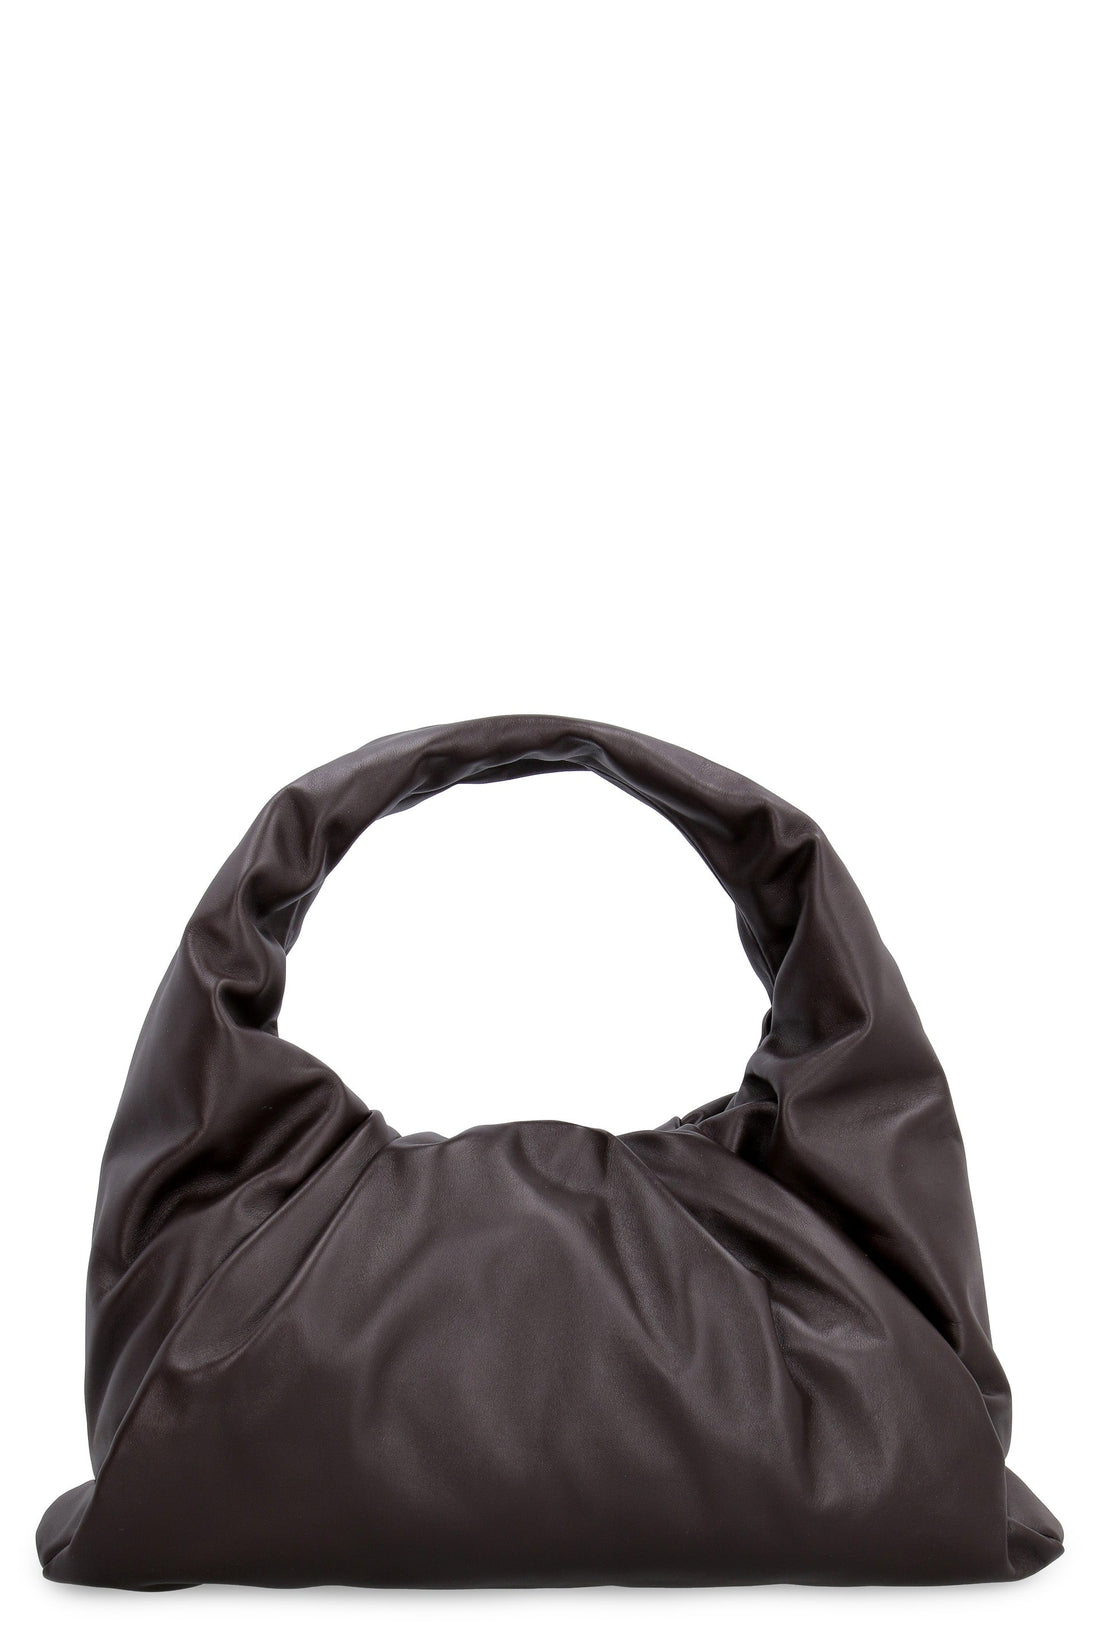 Bottega Veneta-OUTLET-SALE-The Shoulder Pouch leather bag-ARCHIVIST